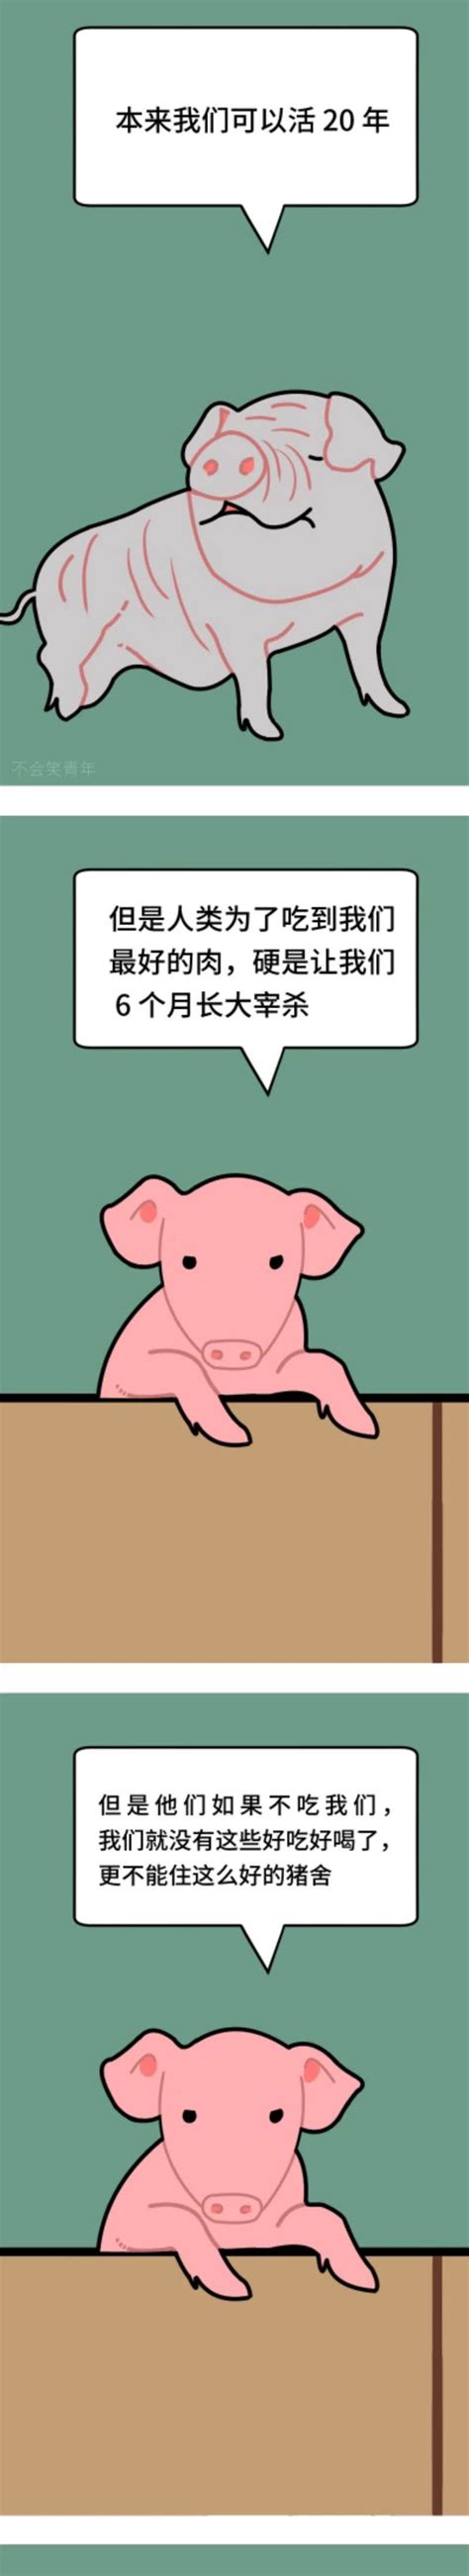 漫画 | 如果我是一头猪！ - 纯洁的微笑博客